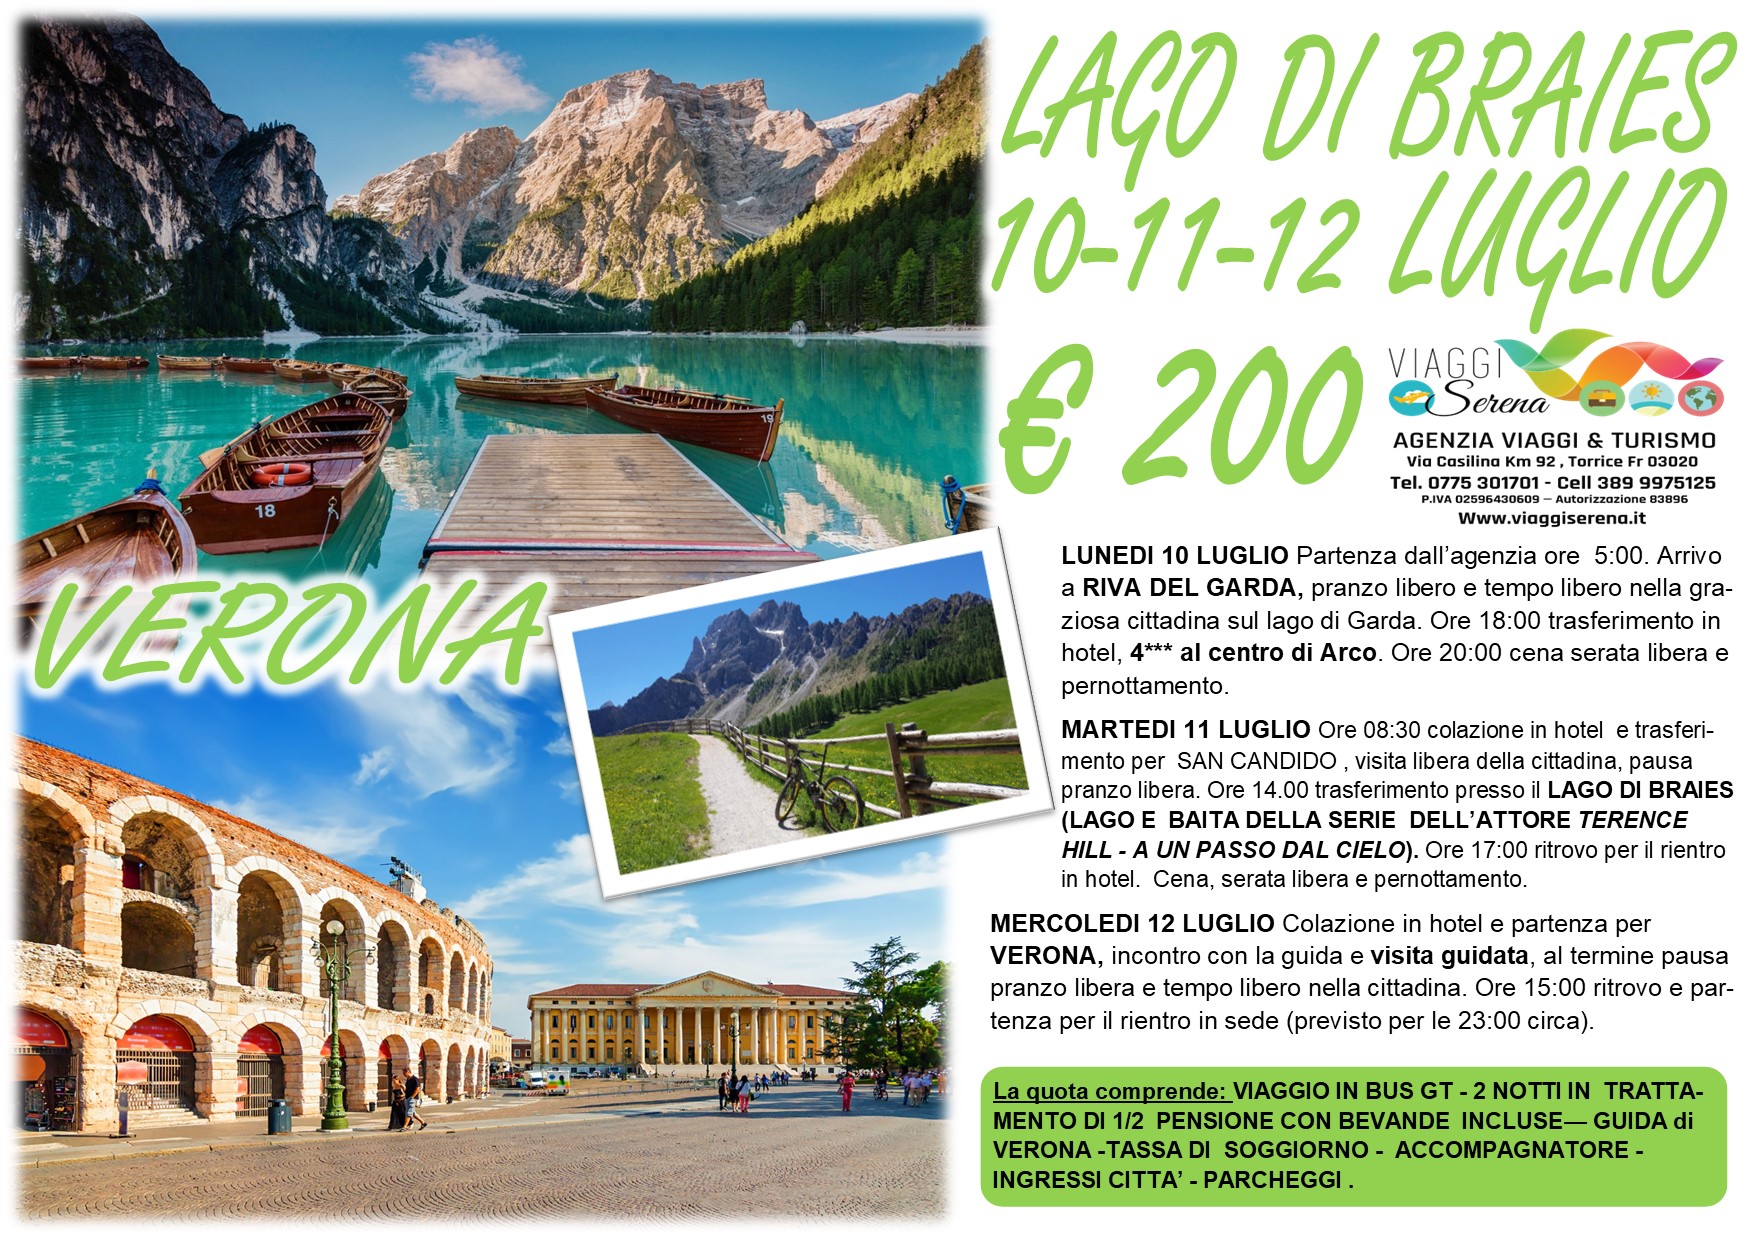 Viaggi di Gruppo: Riva del Garda, Lago di Braies , San Candido & Verona 10-11-12 Luglio € 200,00